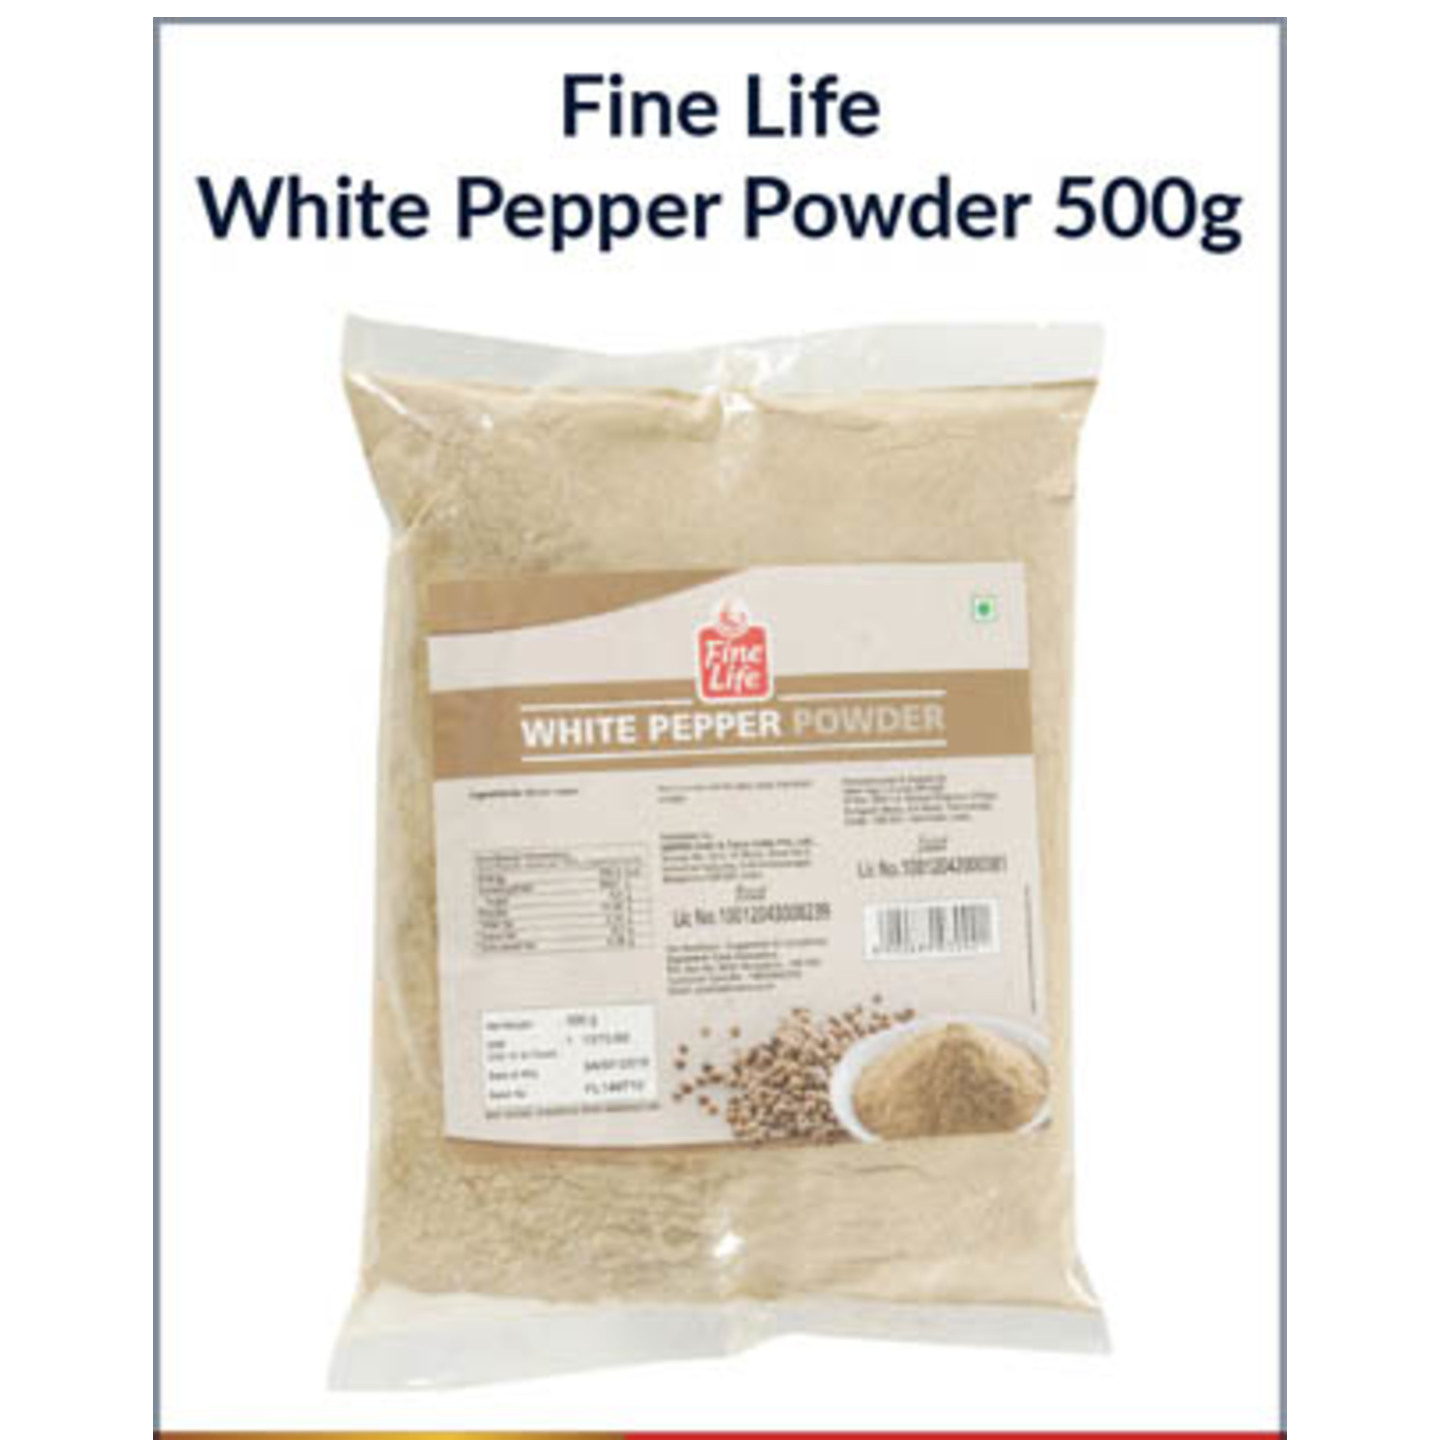 Fine Life White Pepper Powder 500G